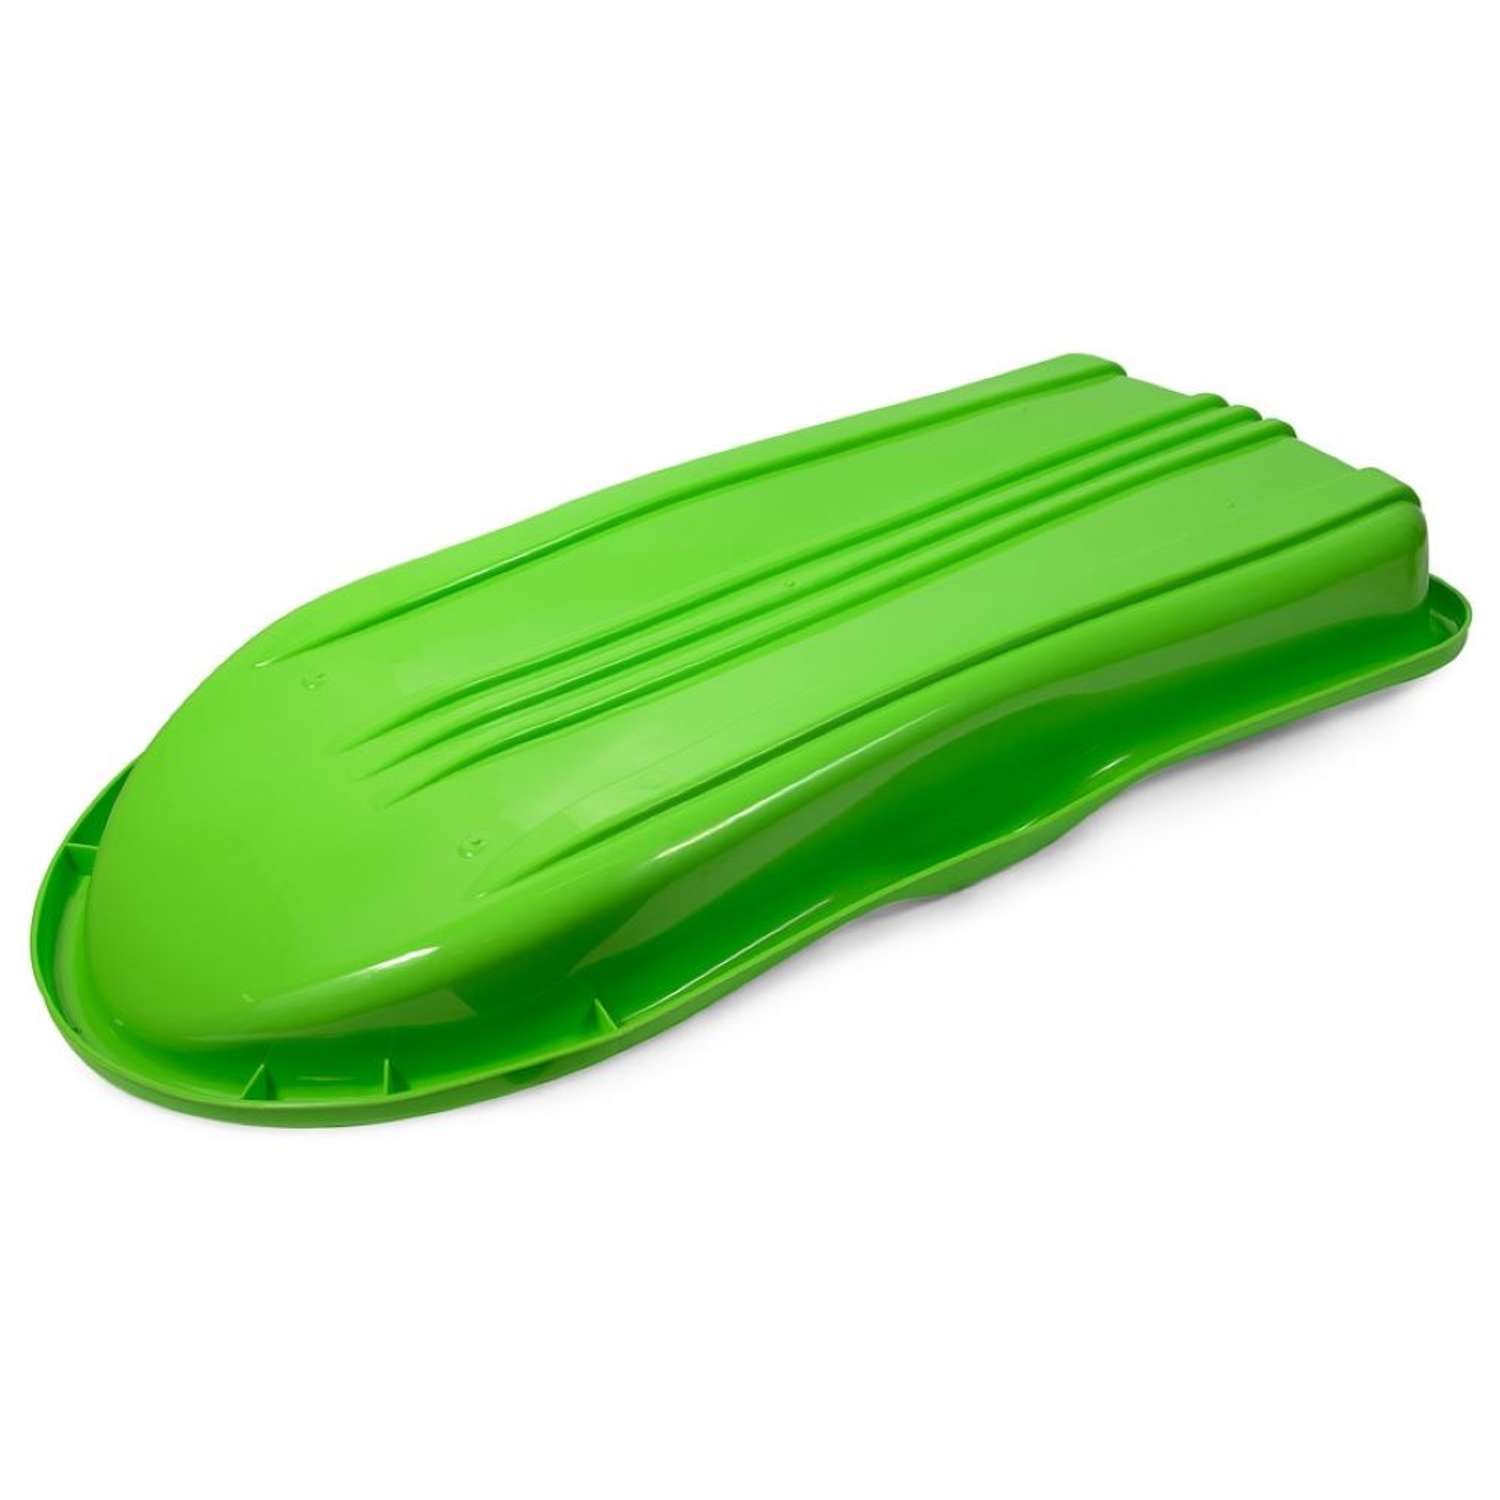 Санки ледянка 90 см Green Plast пластиковая большая детская цвет салатовый - фото 3